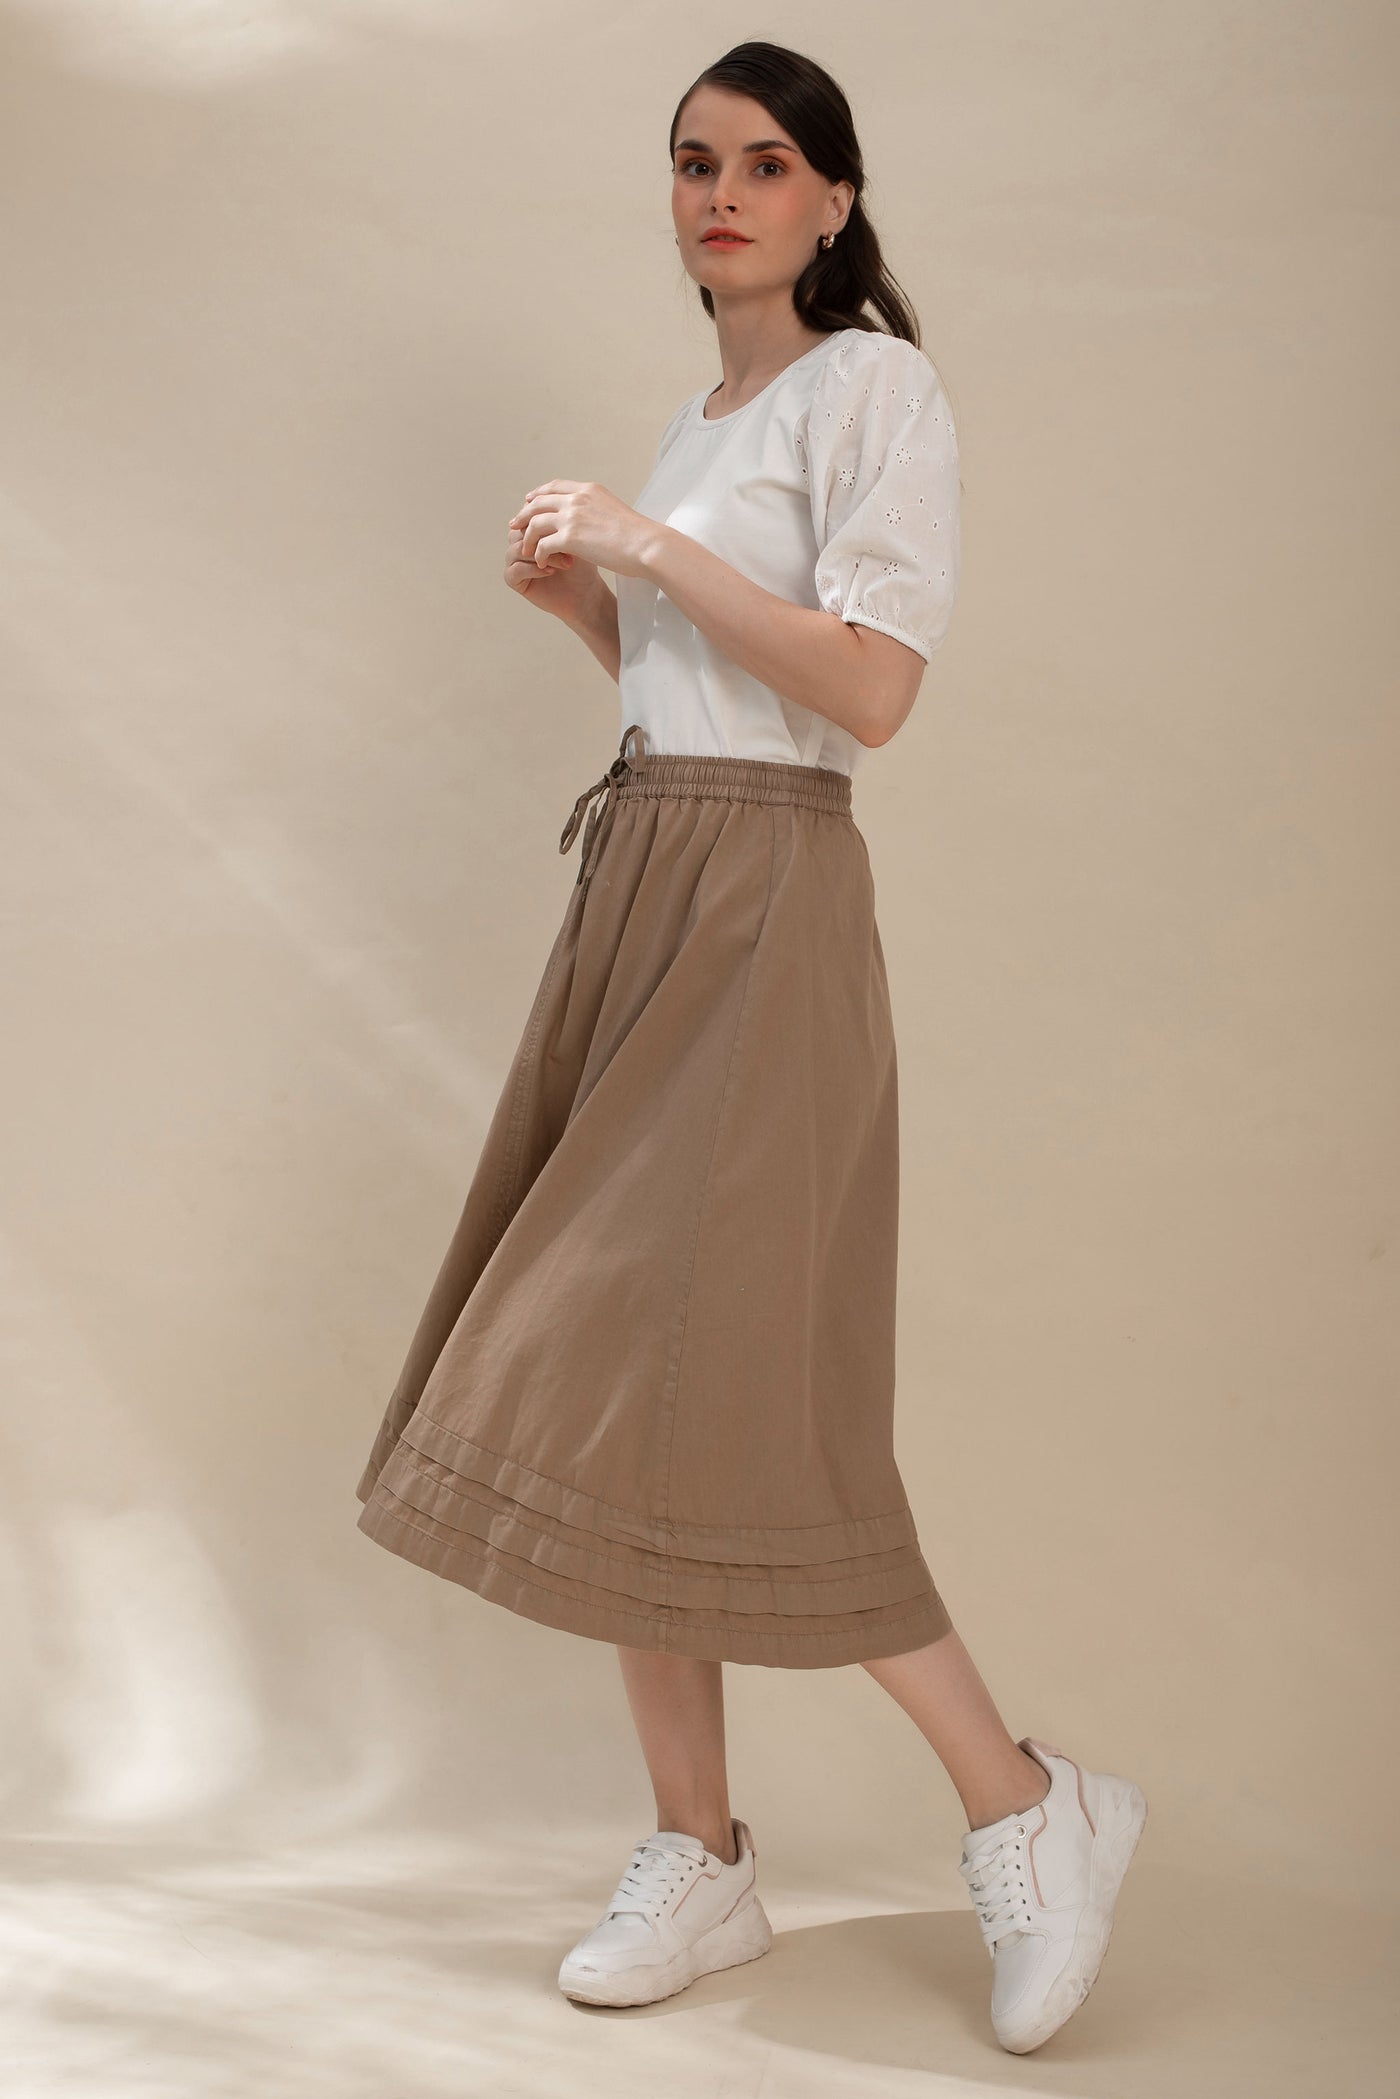 Incense Skirt